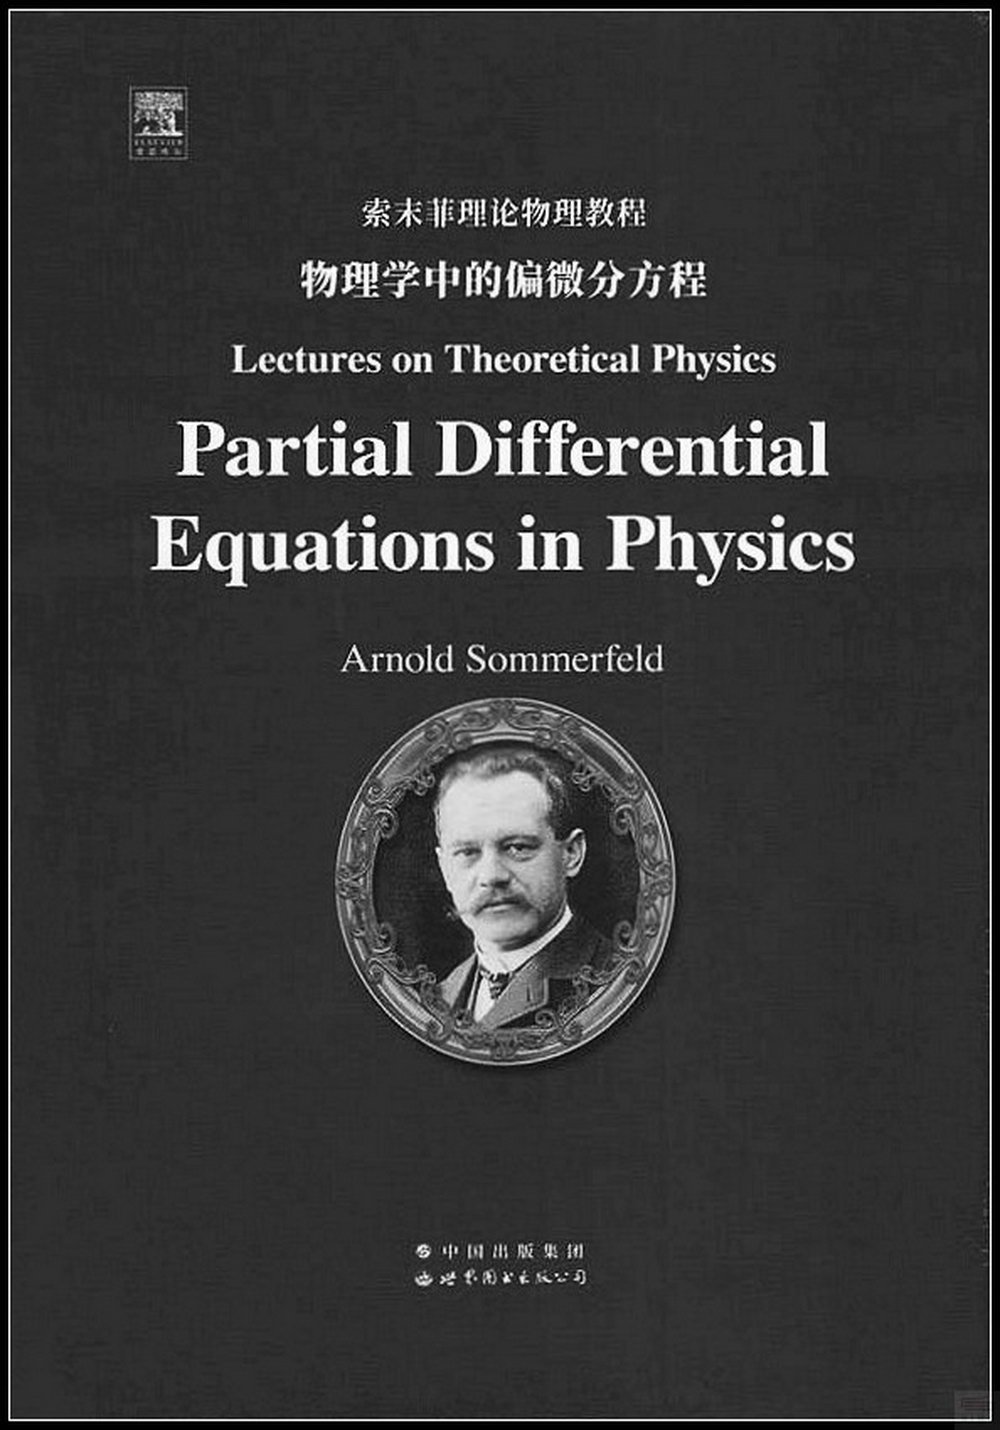 索末菲理論物理教程--物理學中的偏微分方程